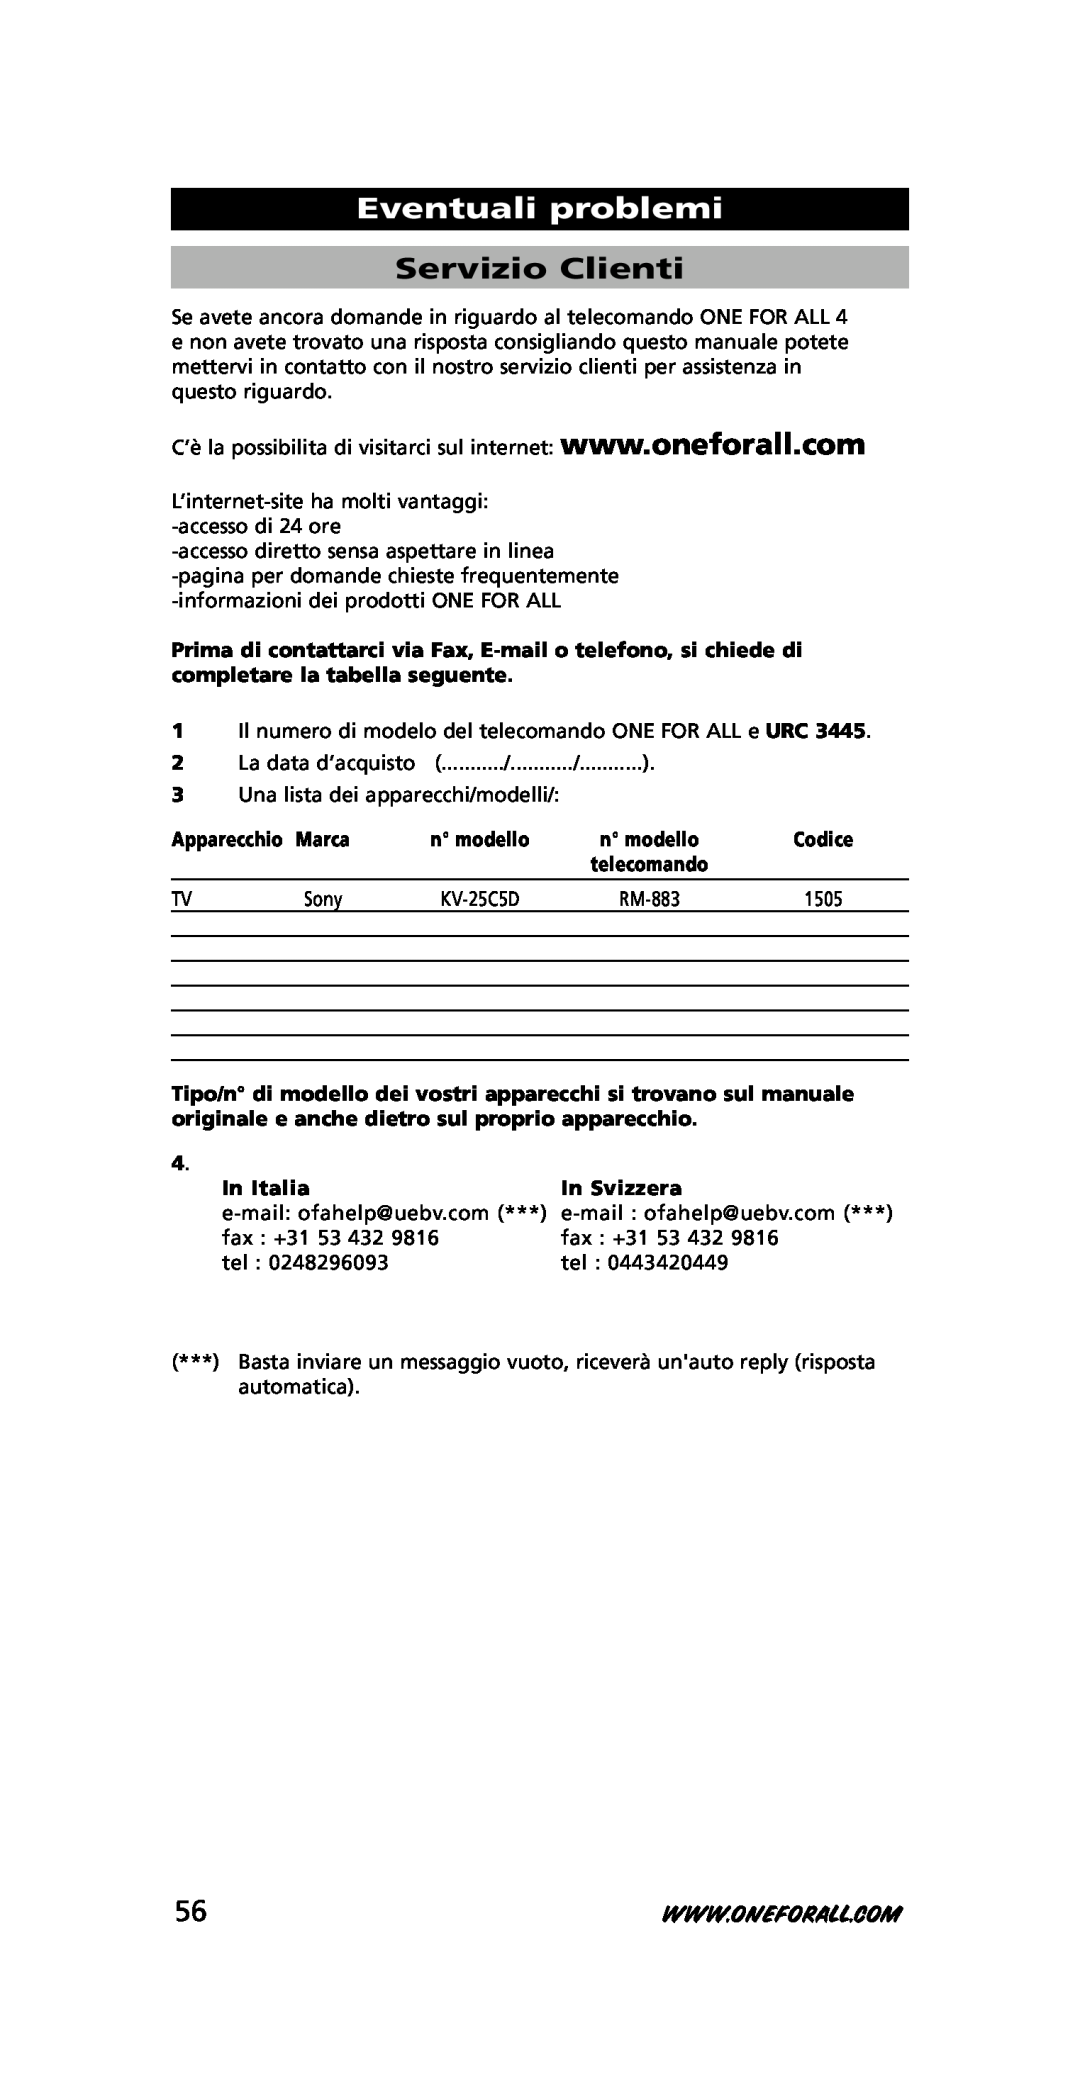 One for All URC-3445 instruction manual Eventuali problemi, Servizio Clienti, Apparecchio, 1505, In Italia, In Sv izzera 